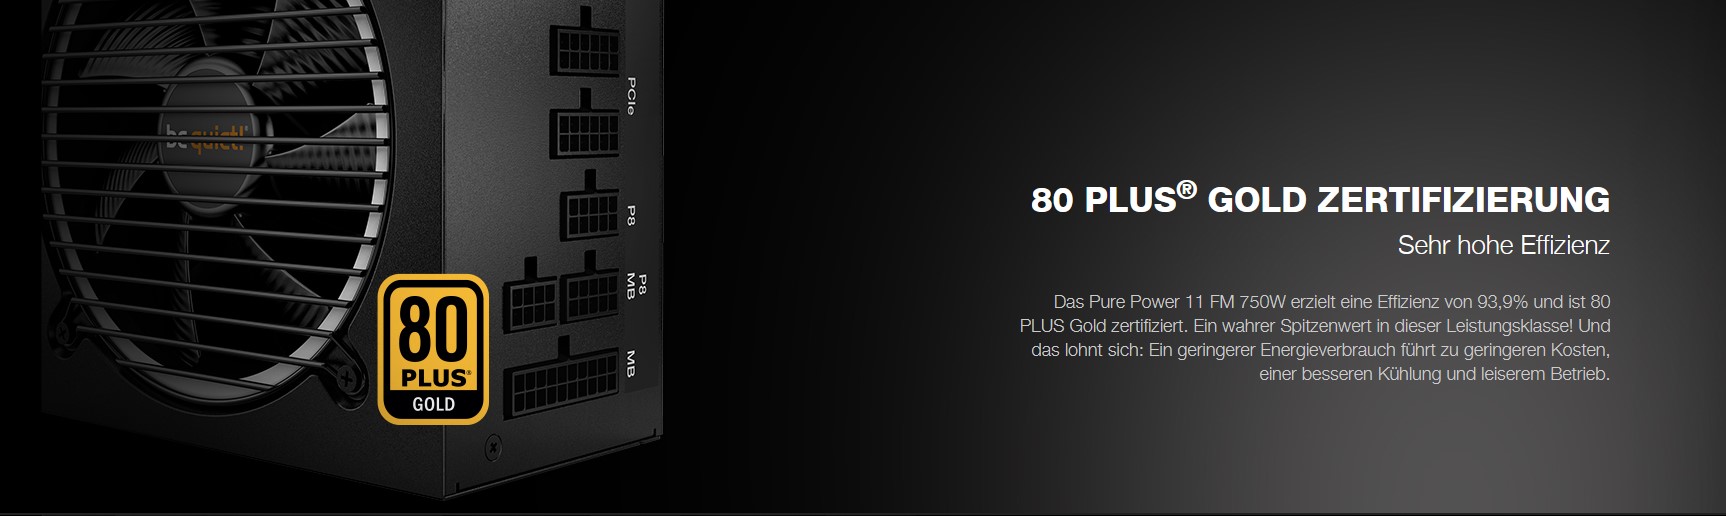 Pure Power 11 750W FM intro